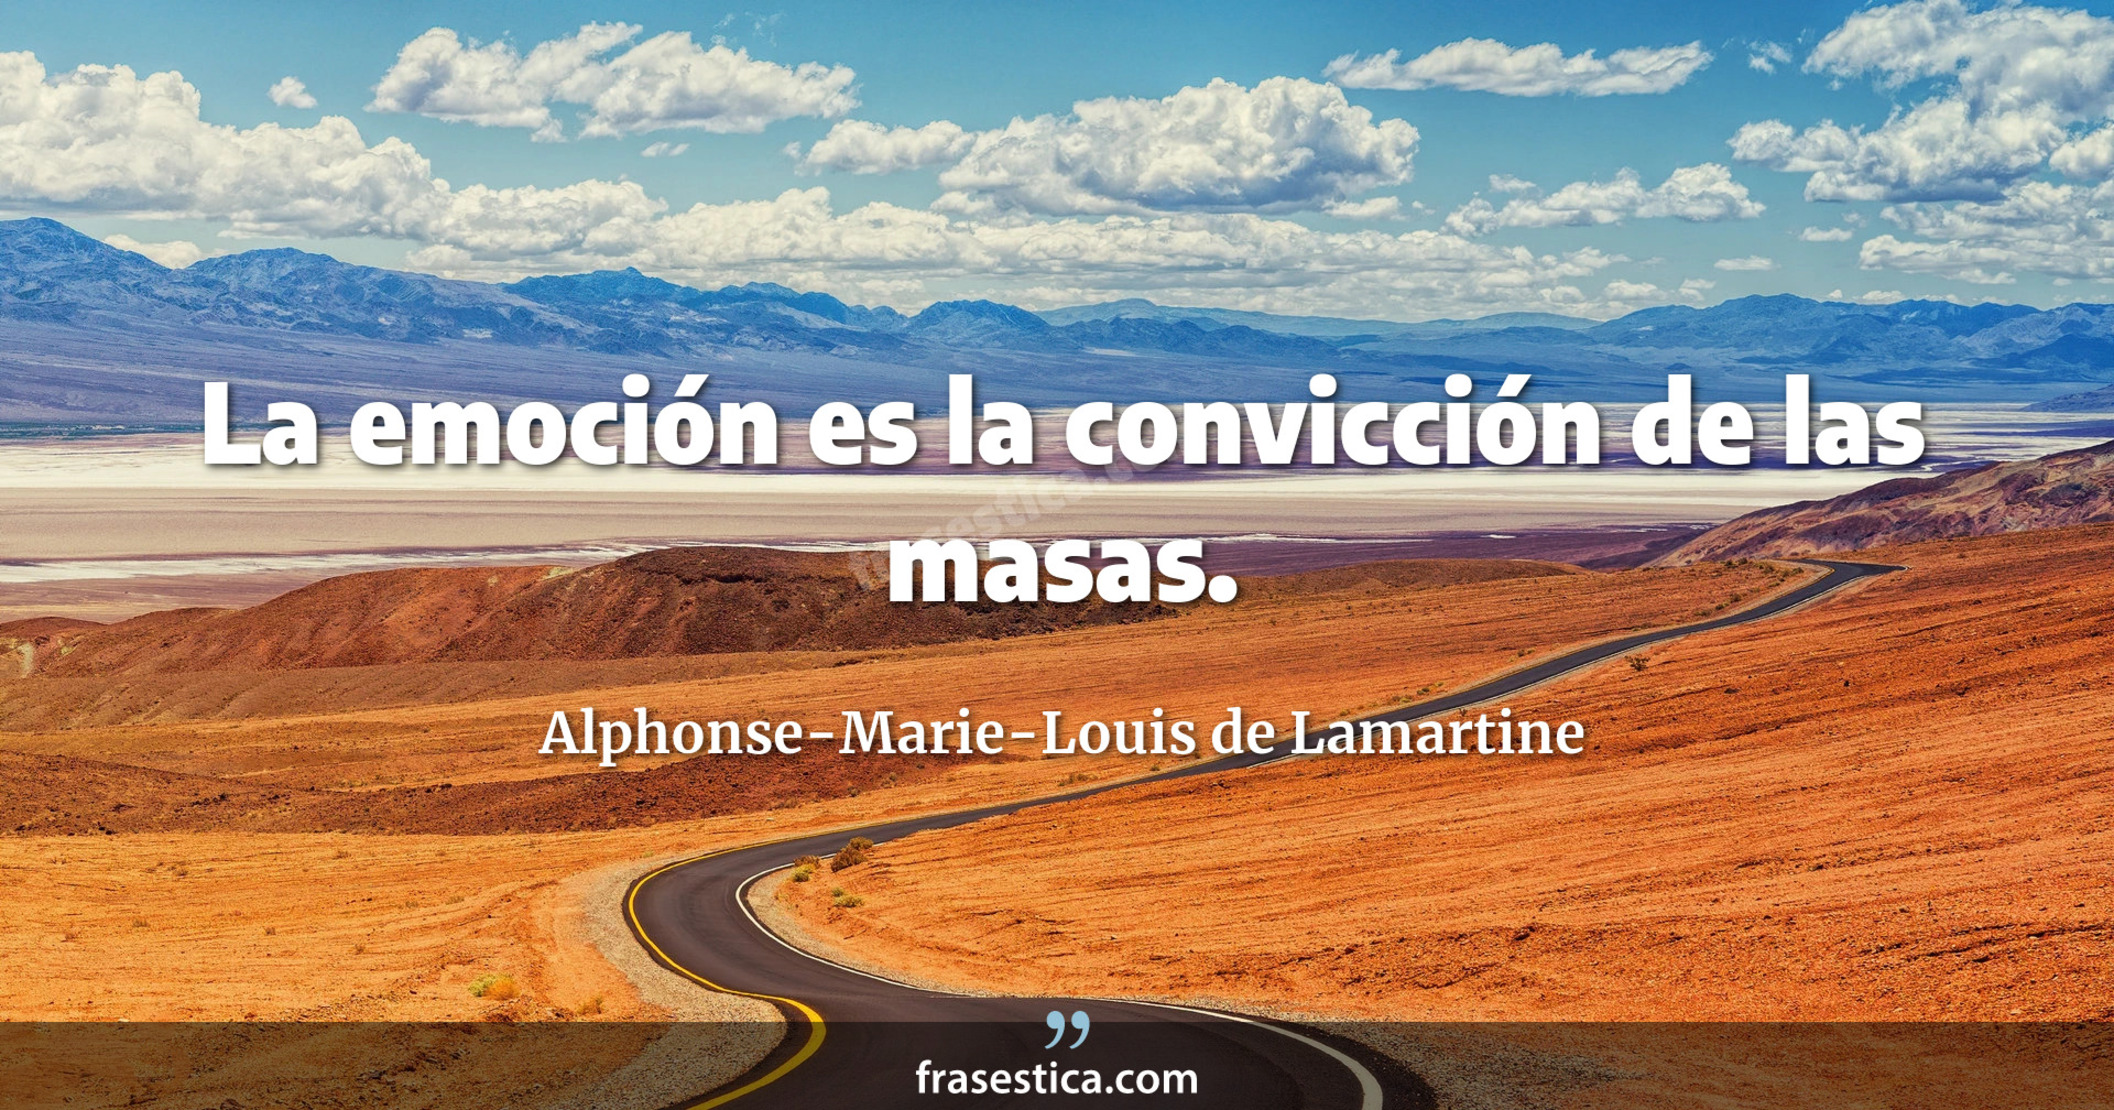 La emoción es la convicción de las masas. - Alphonse-Marie-Louis de Lamartine